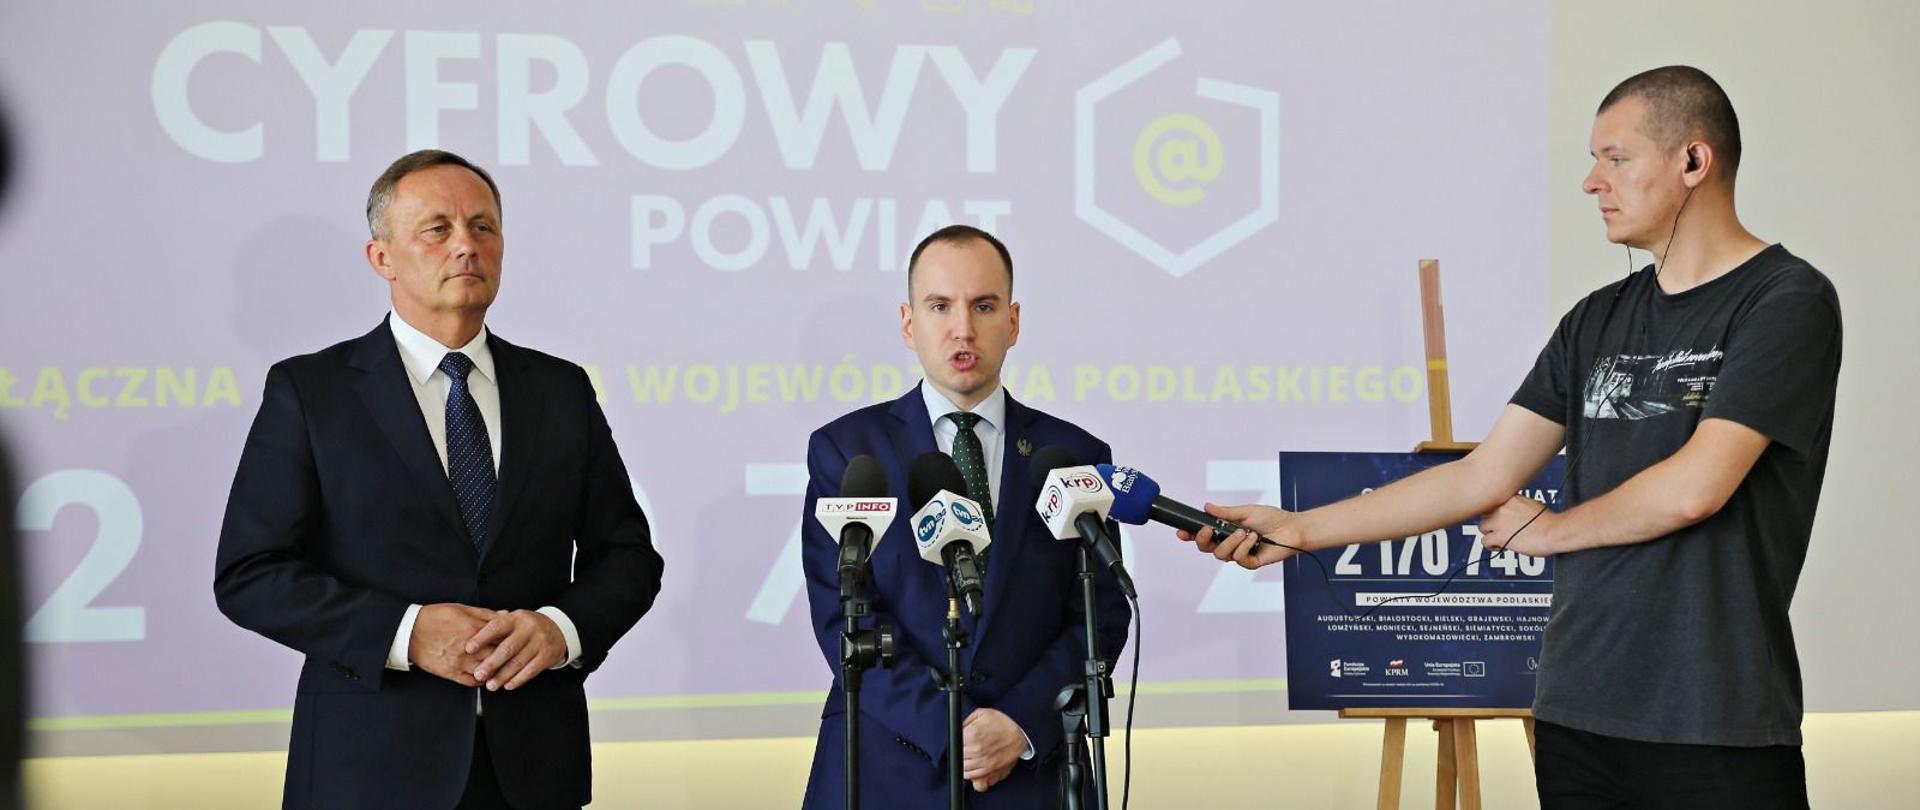 Konferencja prasowa ministra Adama Andruszkiewicza w Siemiatyczach poświęcona inauguracji programu Cyfrowy Powiat